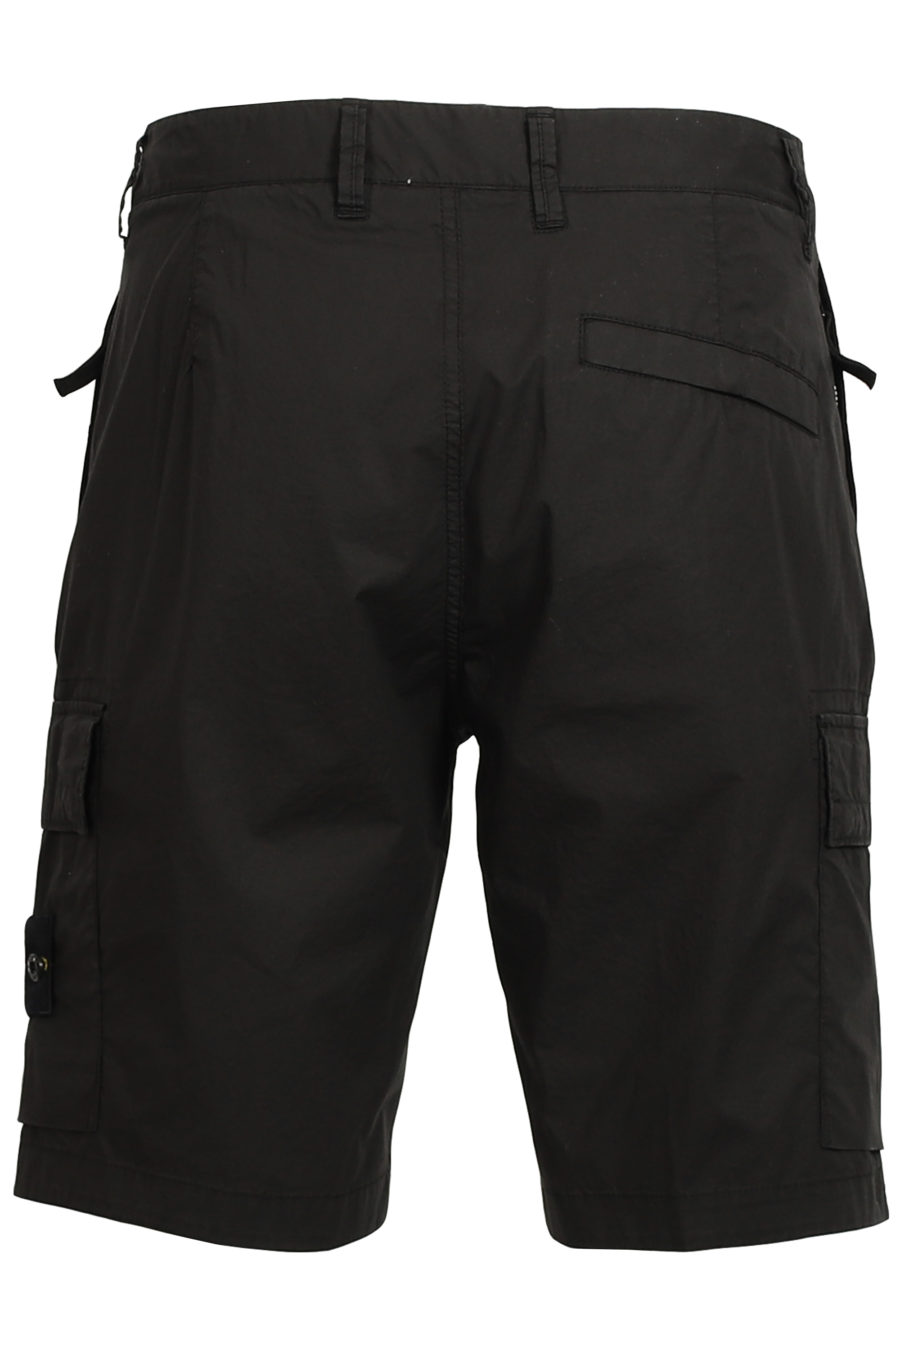 Pantalón corto negro - IMG 3755